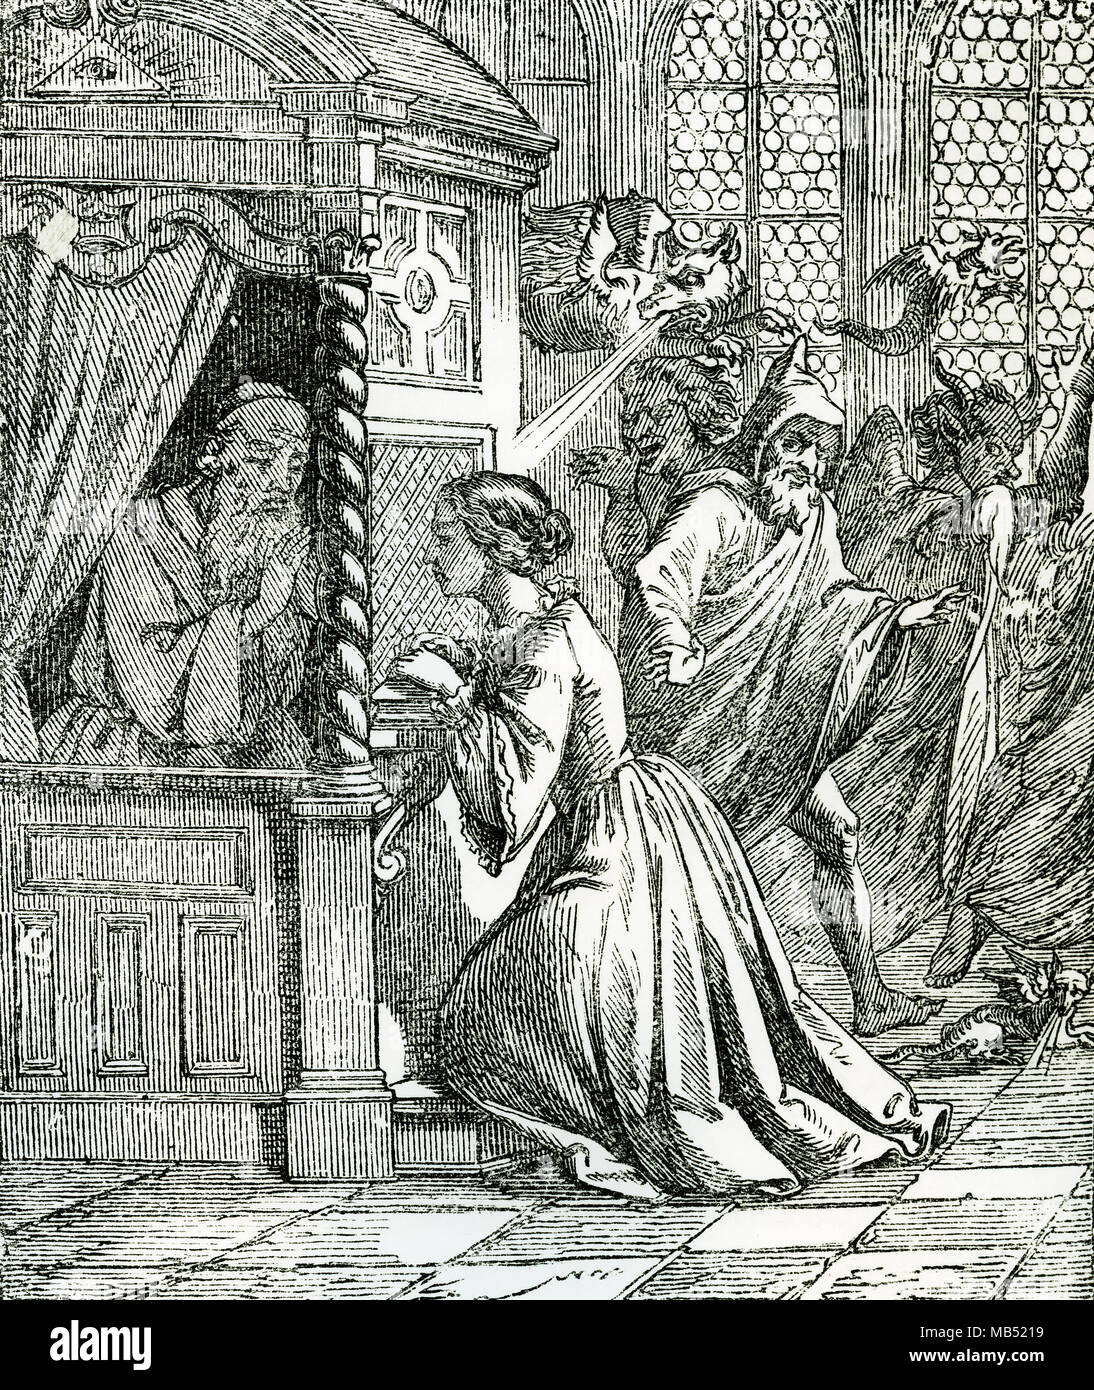 Jeune fille en confessant en confessionnal, devil et séducteur rôdant autour d'elle, gravure, 19e siècle Banque D'Images